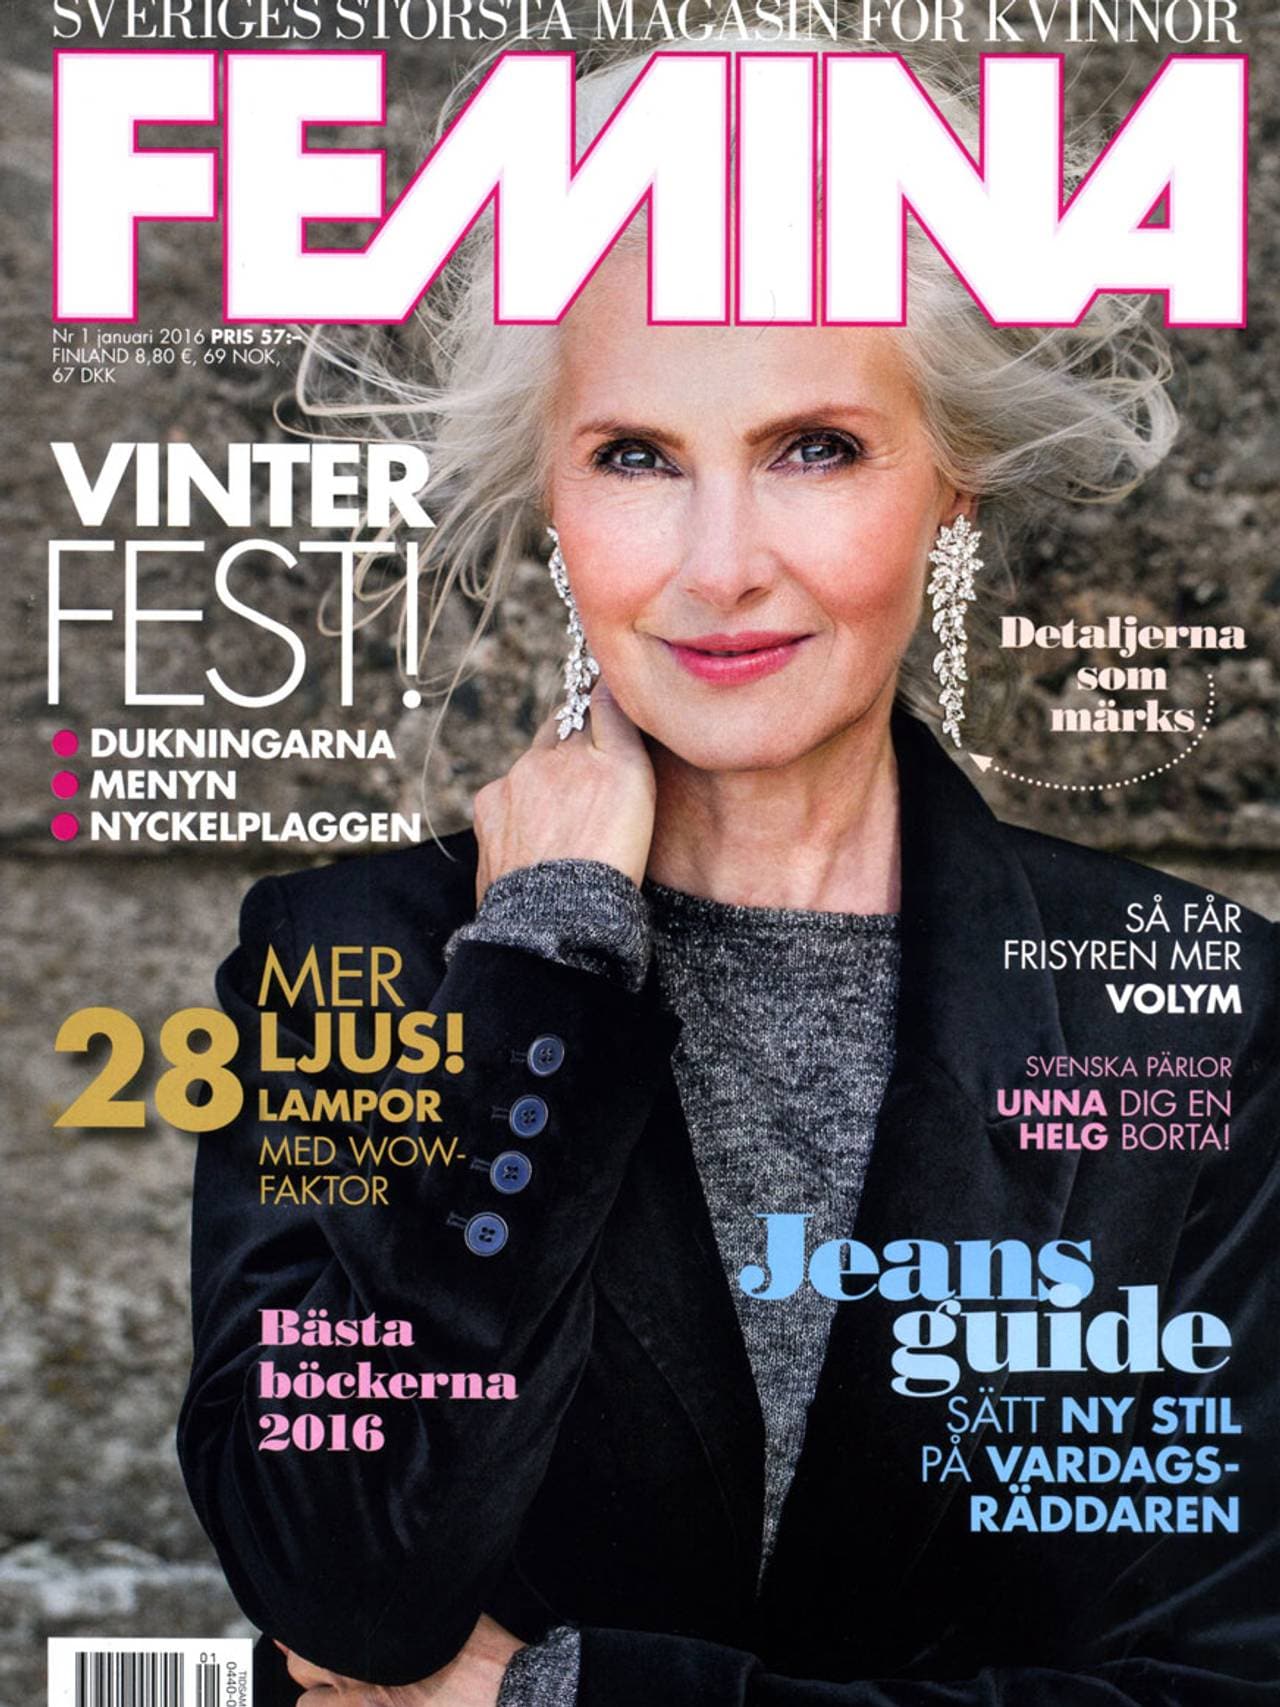 På forsiden av svenske Femina